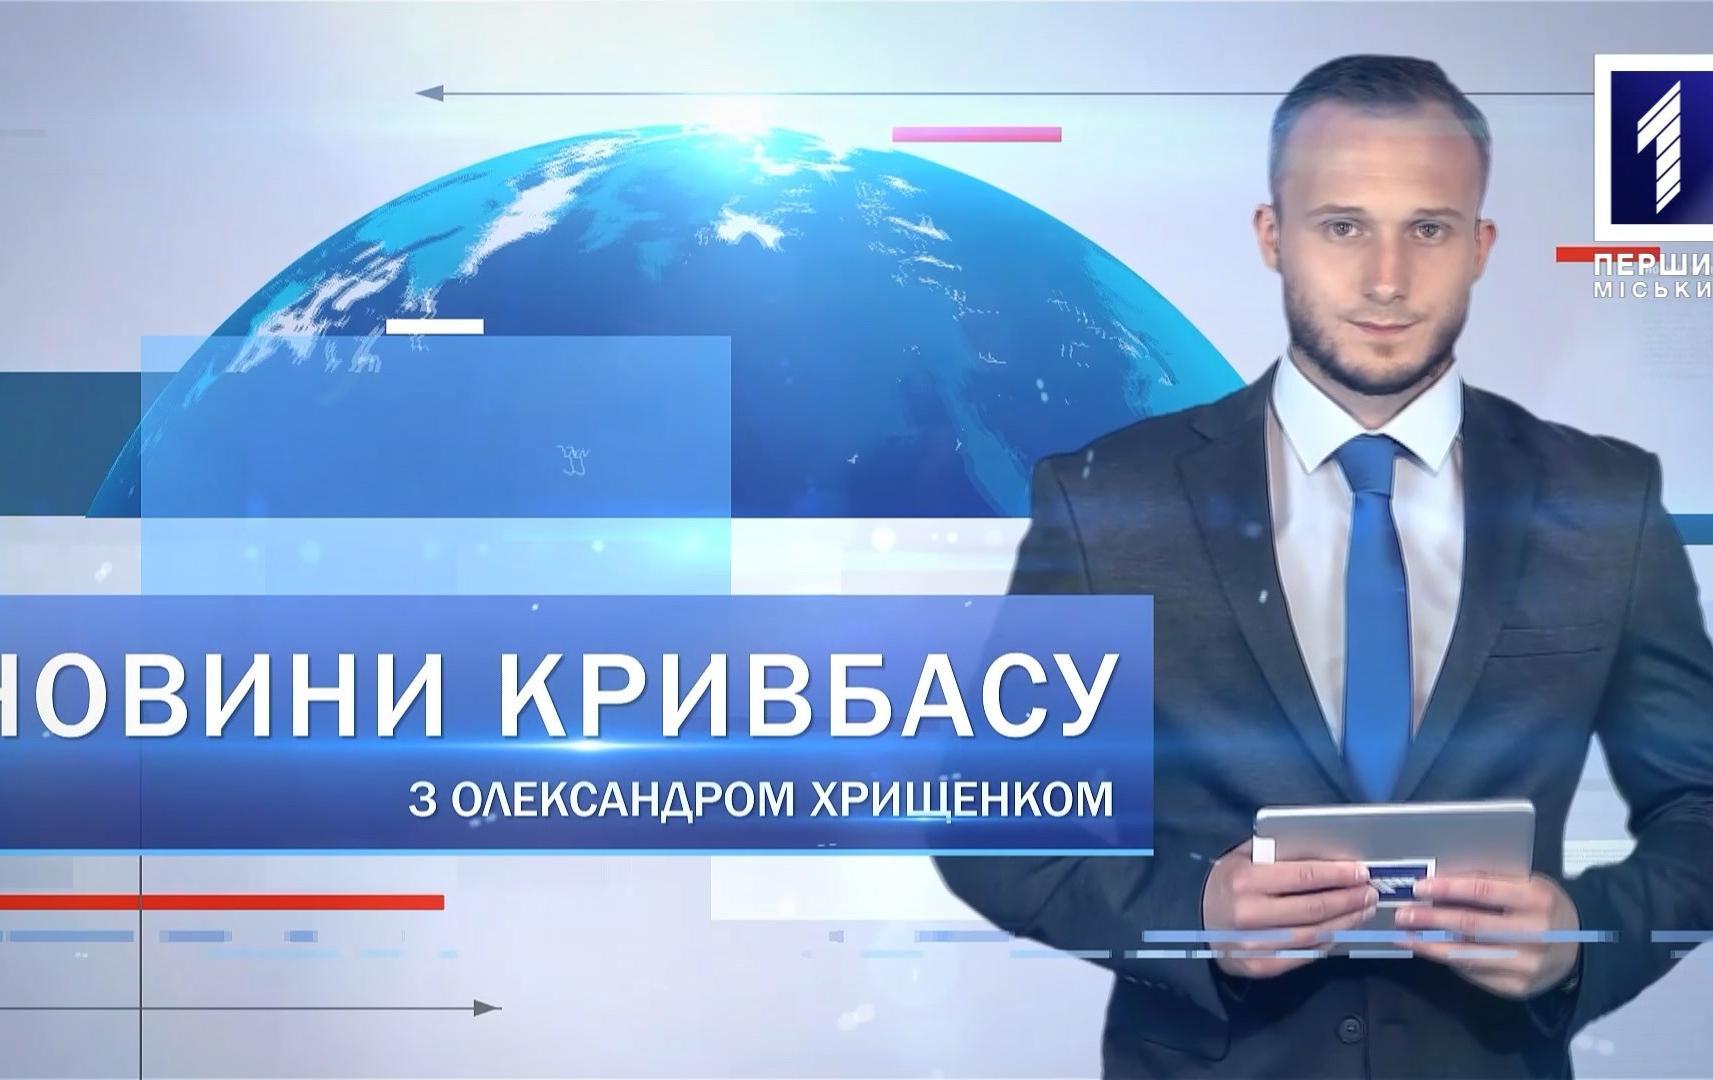 Новини Кривбасу 2 листопада: акція «підвези медика», «замінували» аеропорт, автовишка